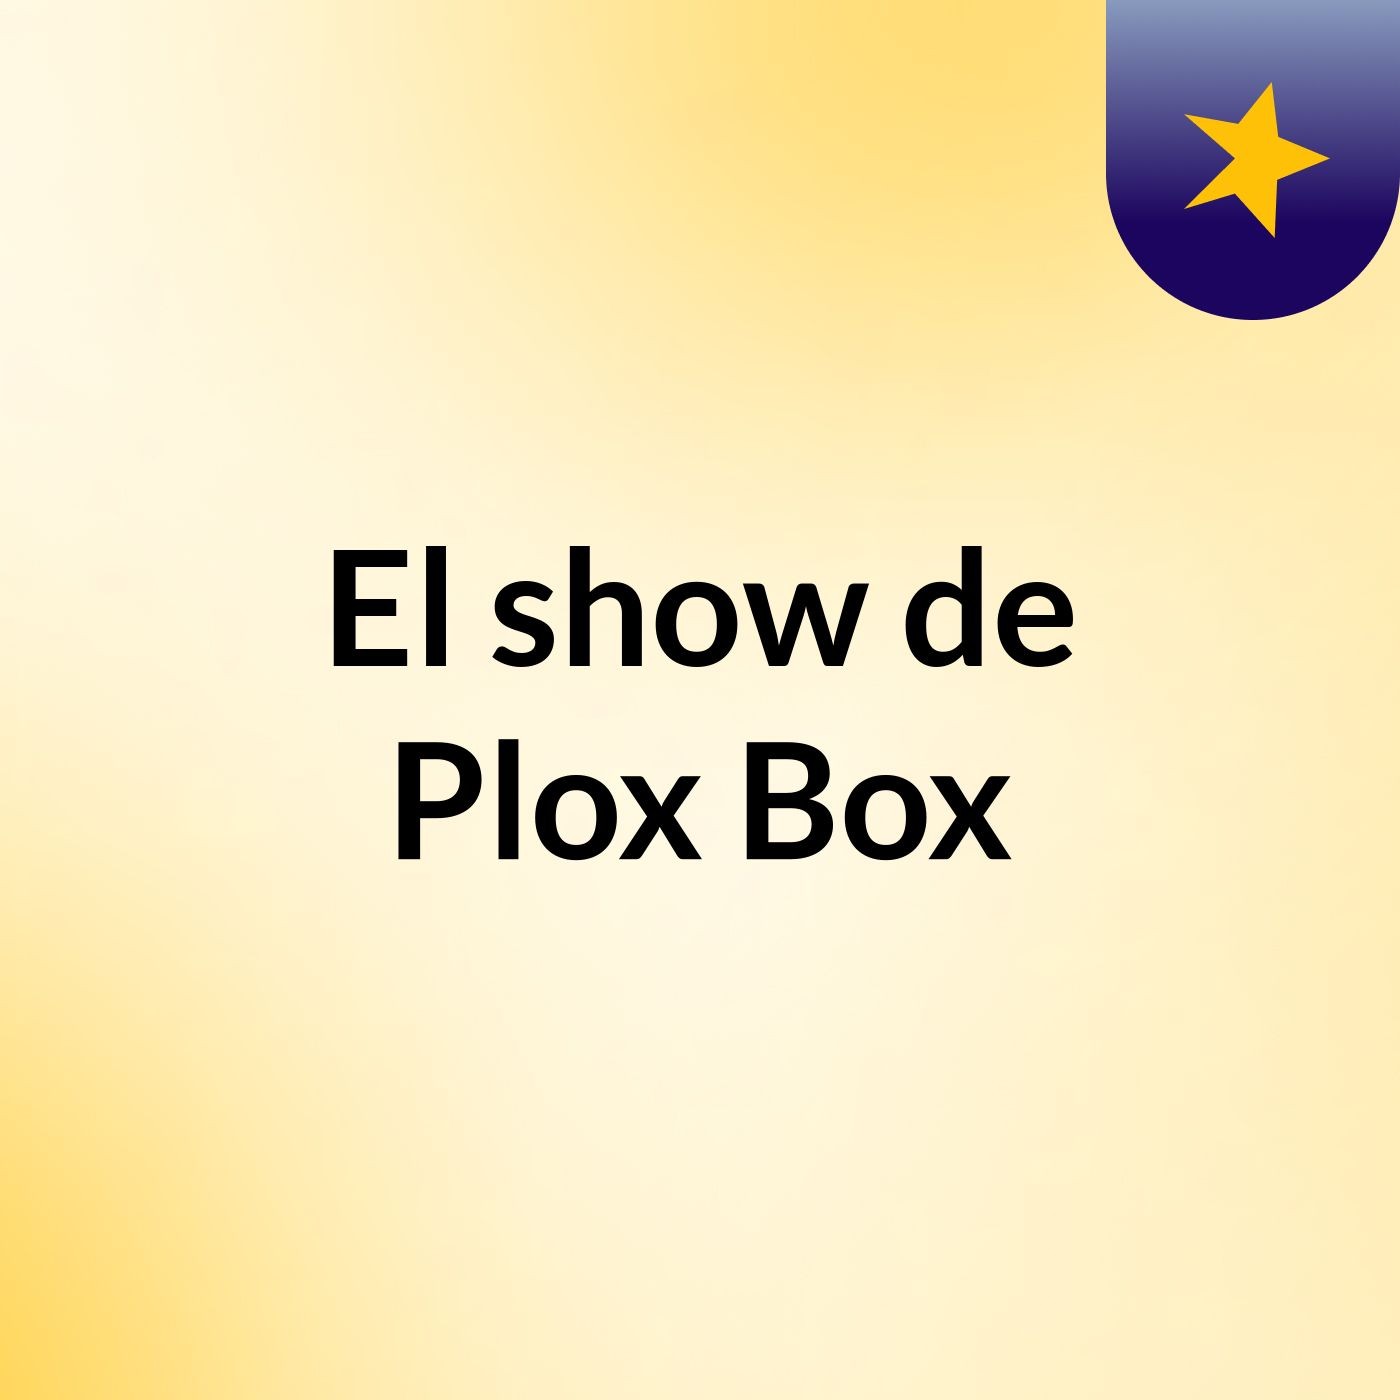 El show de Plox Box